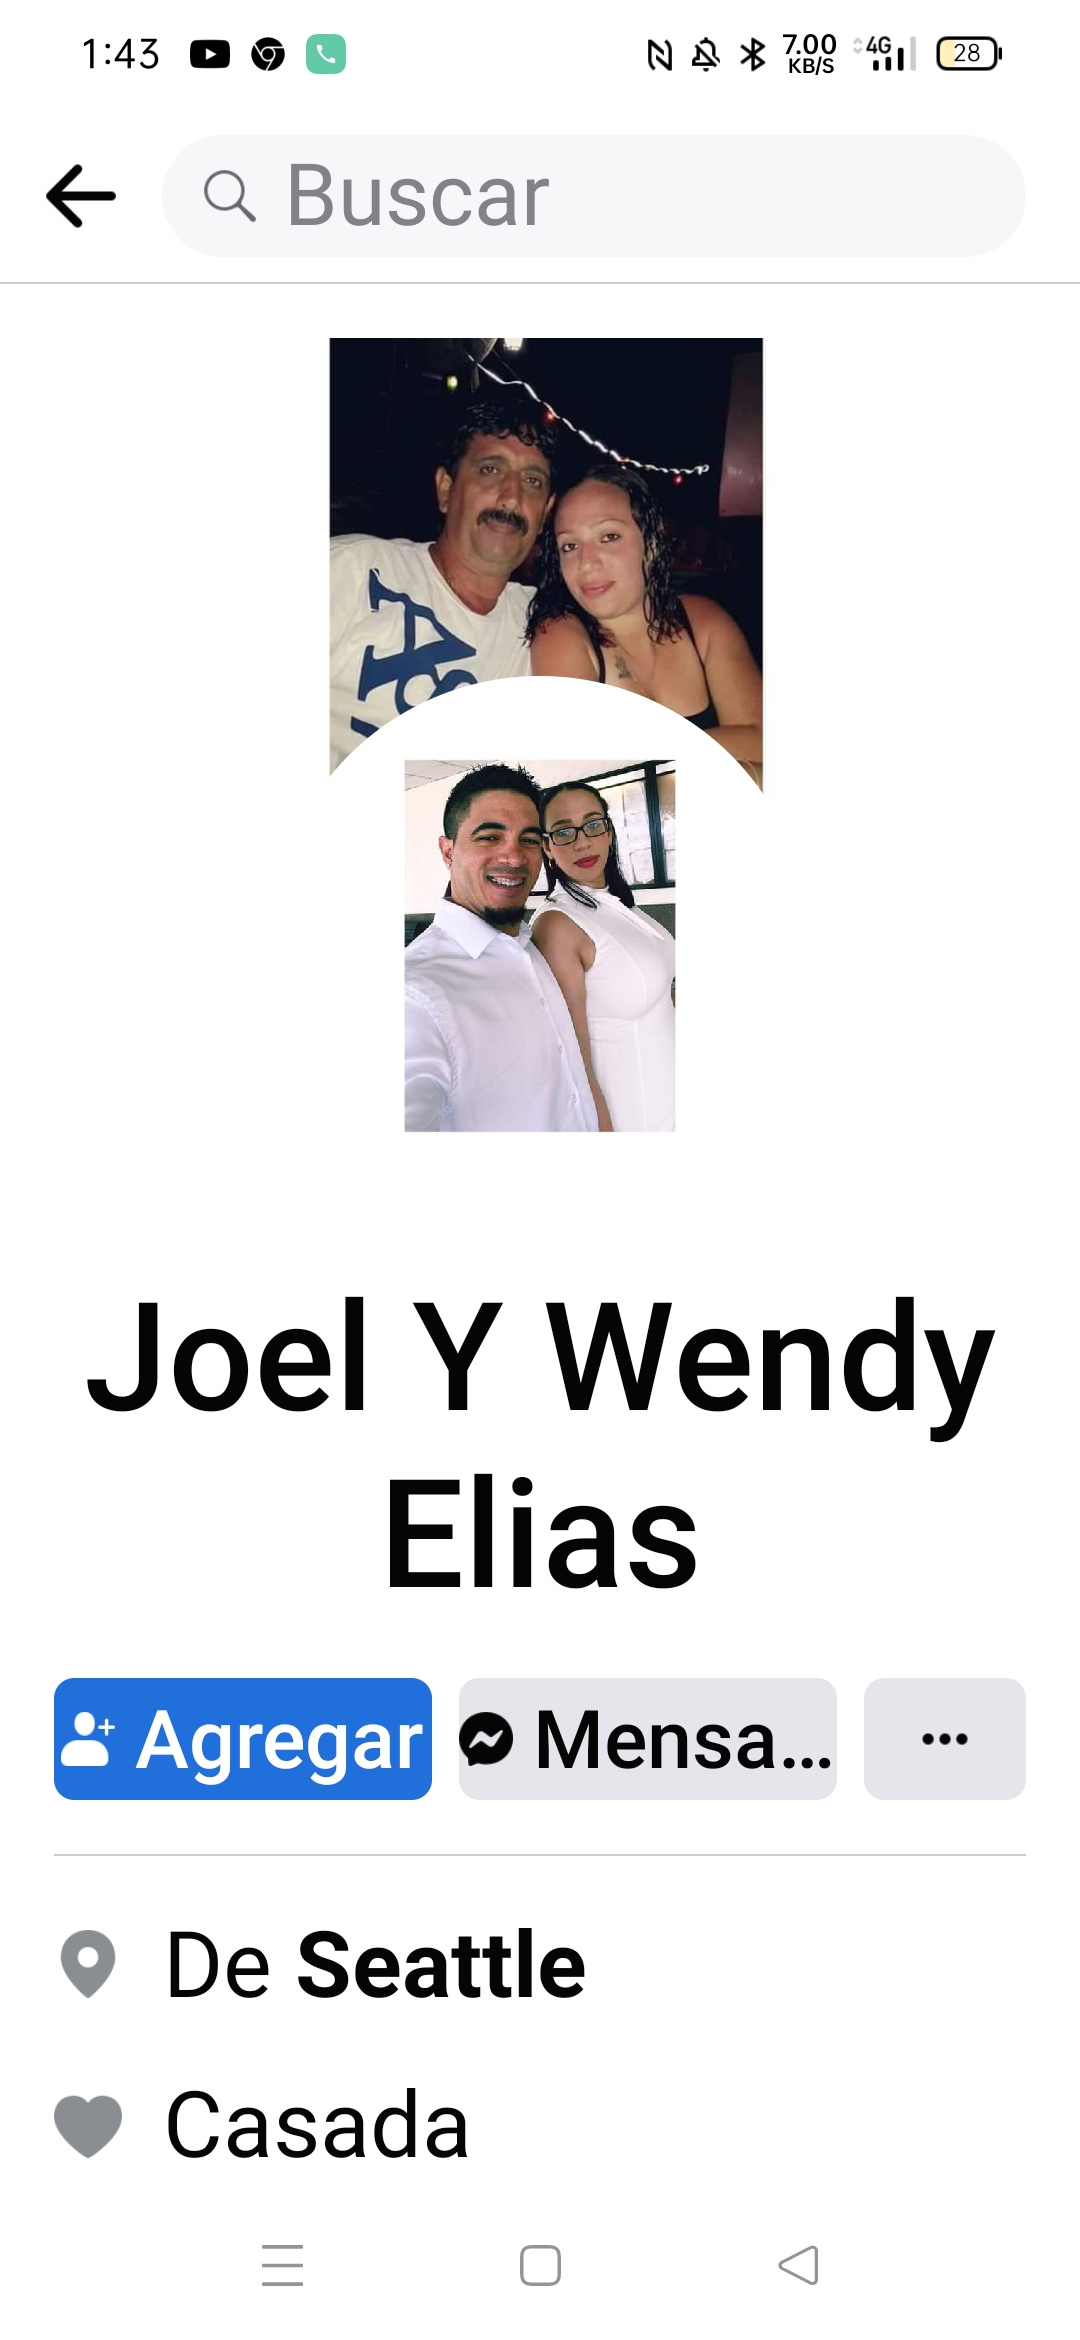 Joel Y wendy Elías